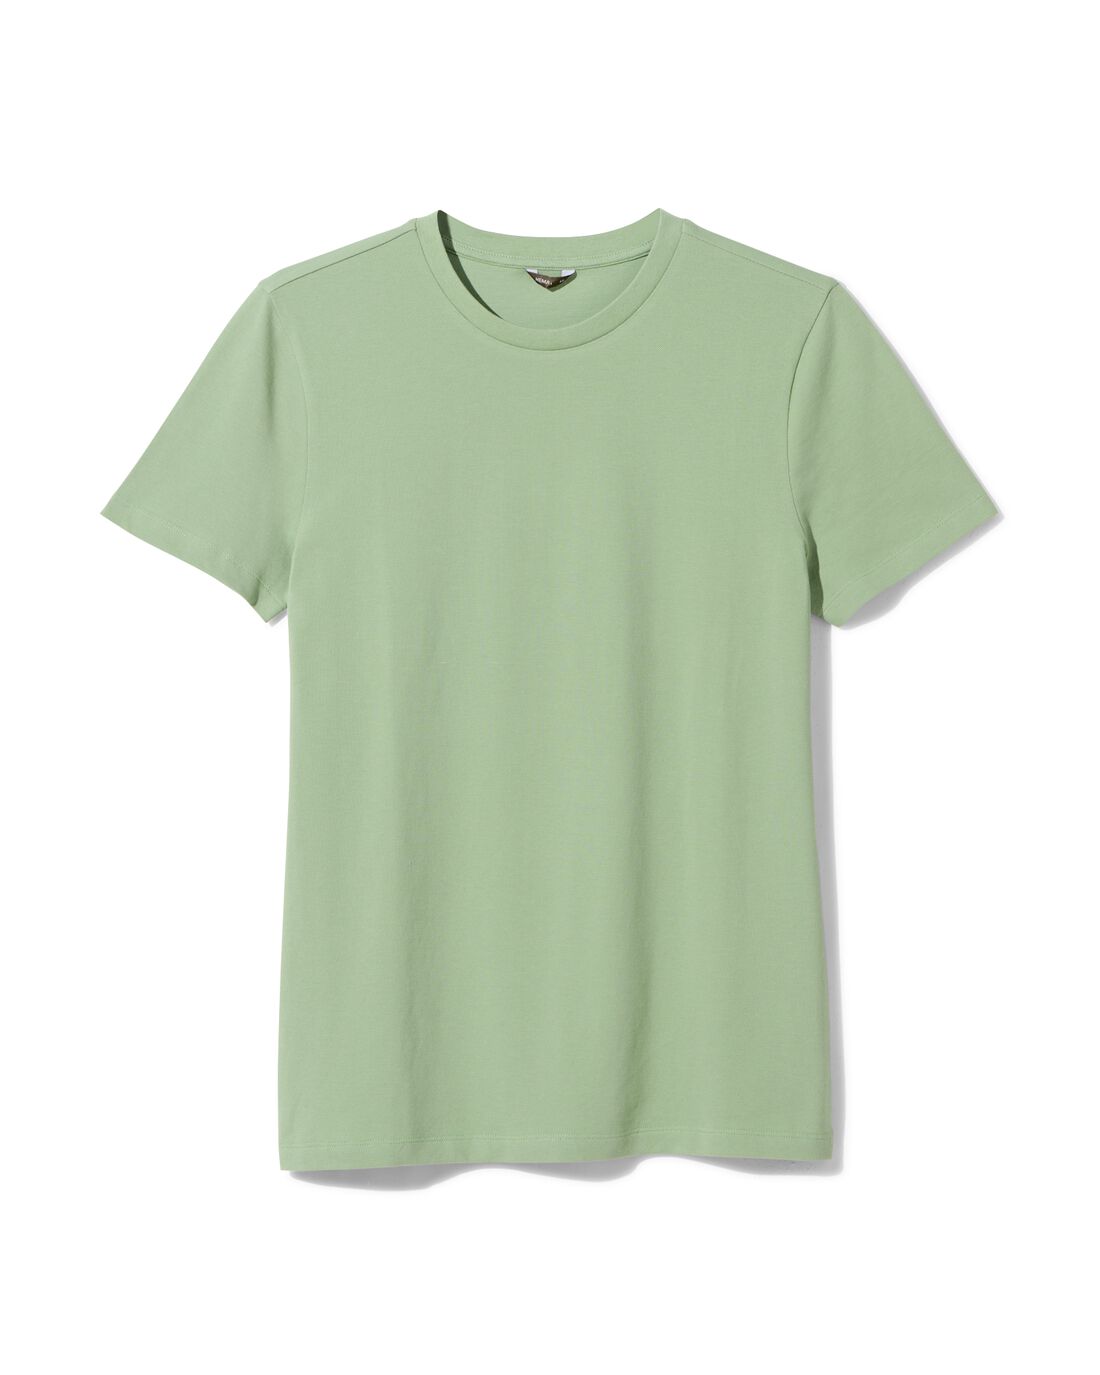 HEMA Heren T-shirt Piqué Groen (groen)